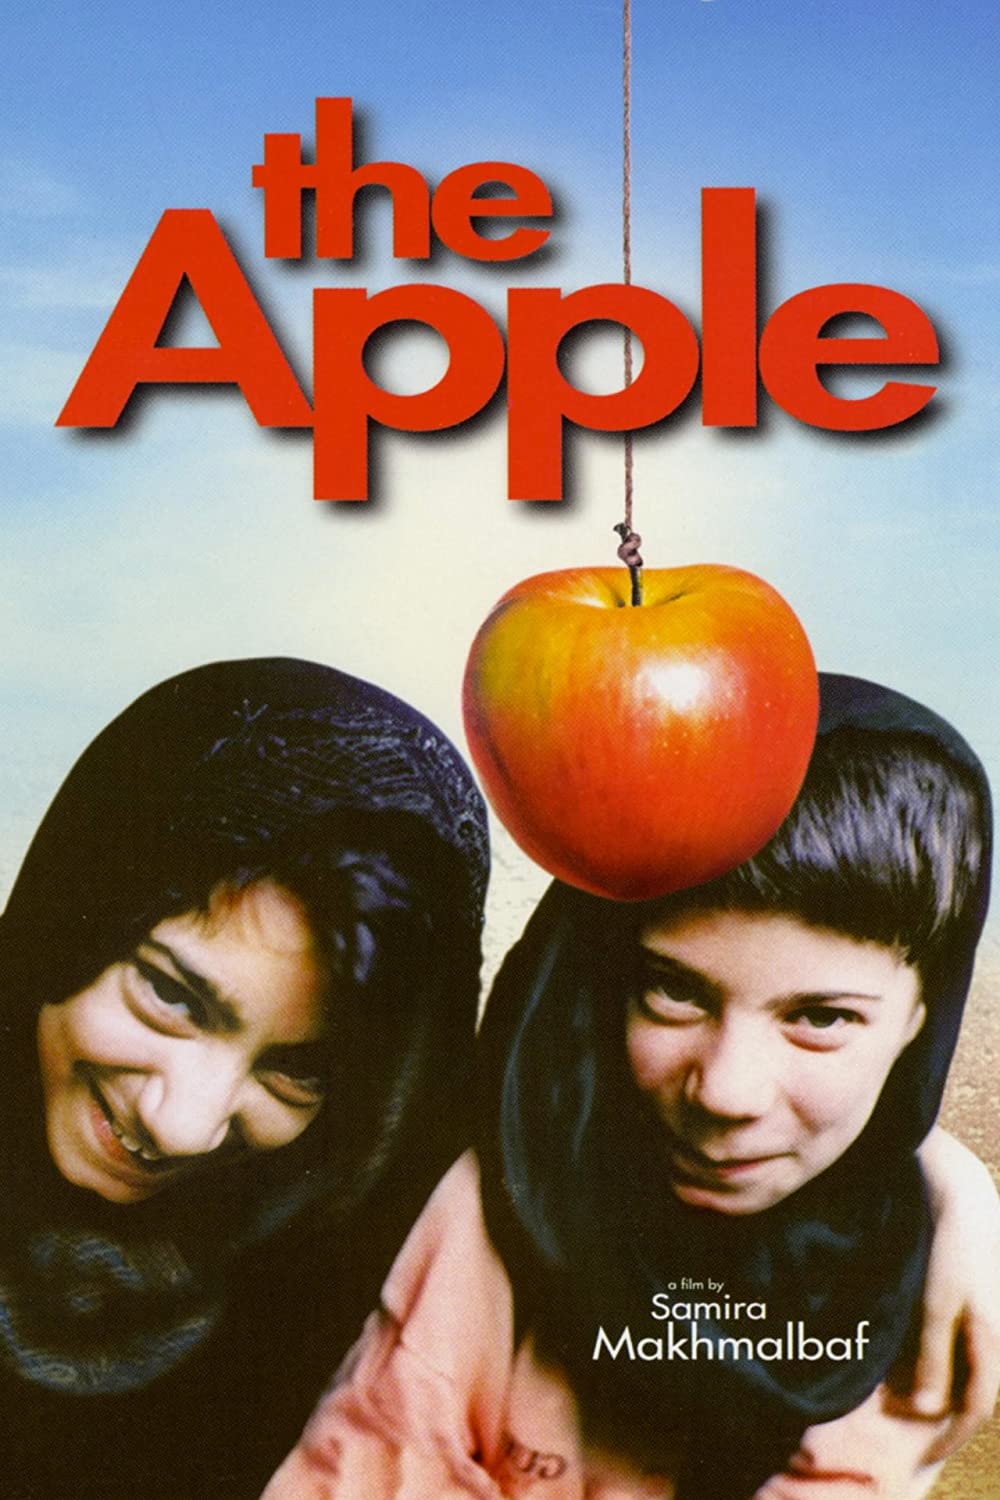 Filmbeschreibung zu Der Apfel